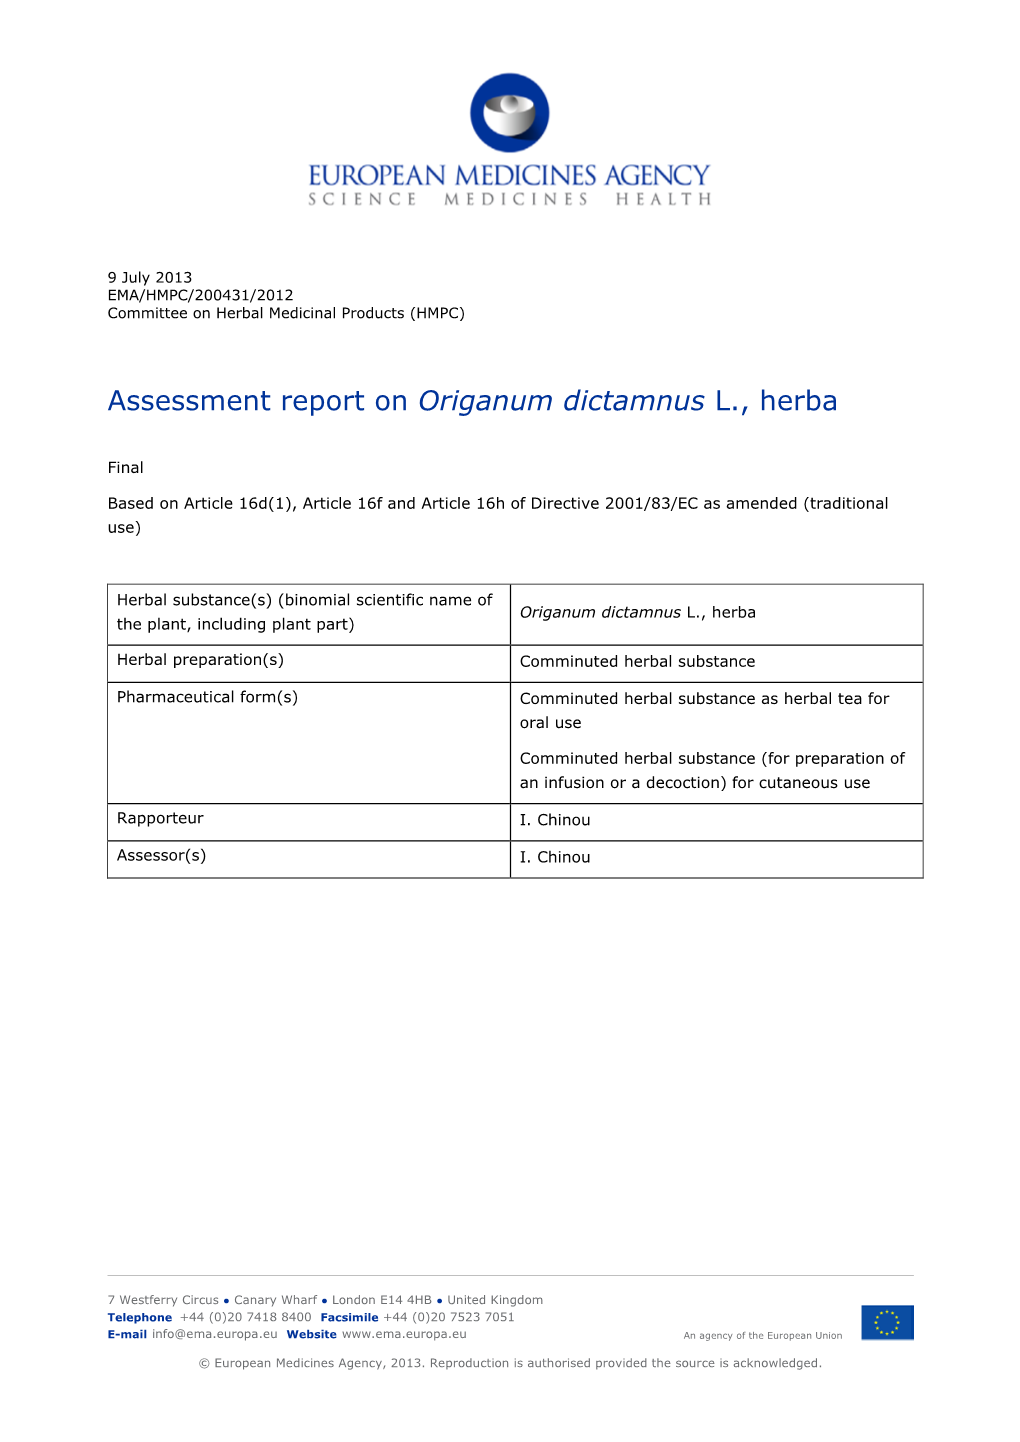 Assessment Report on Origanum Dictamnus L., Herba